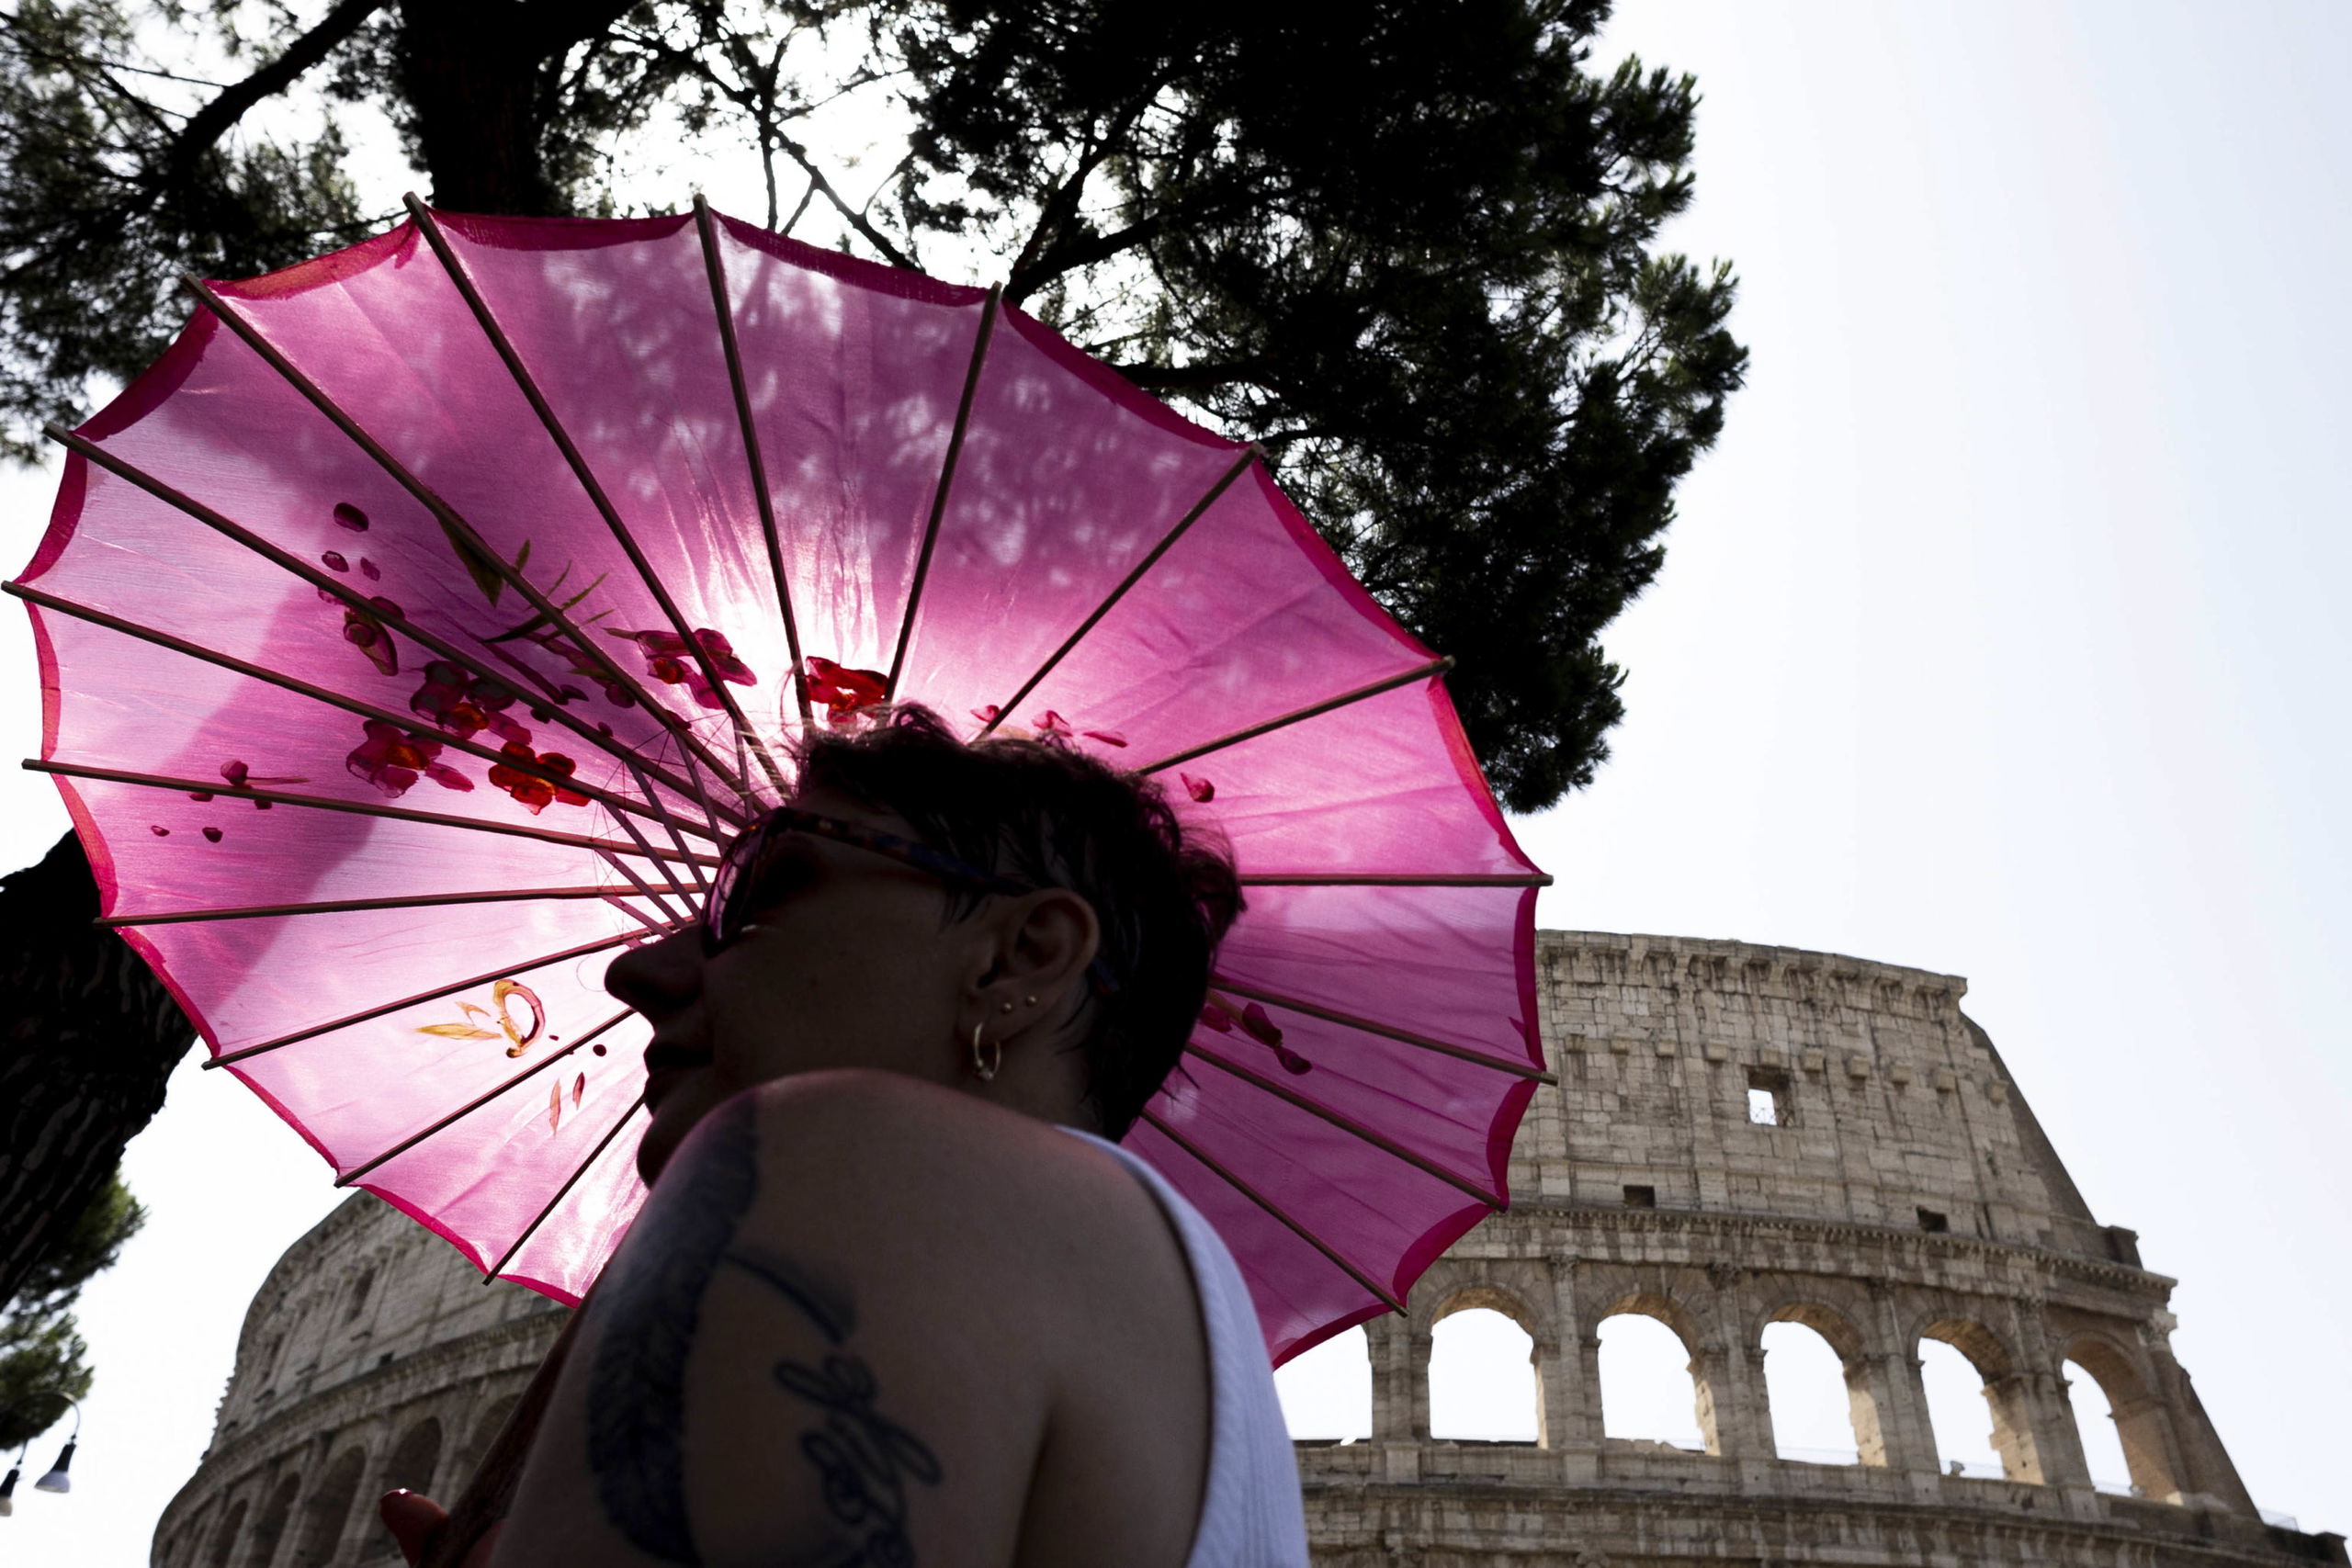 Vandalismo en el Coliseo: otros dos adolescentes rayan el monumento